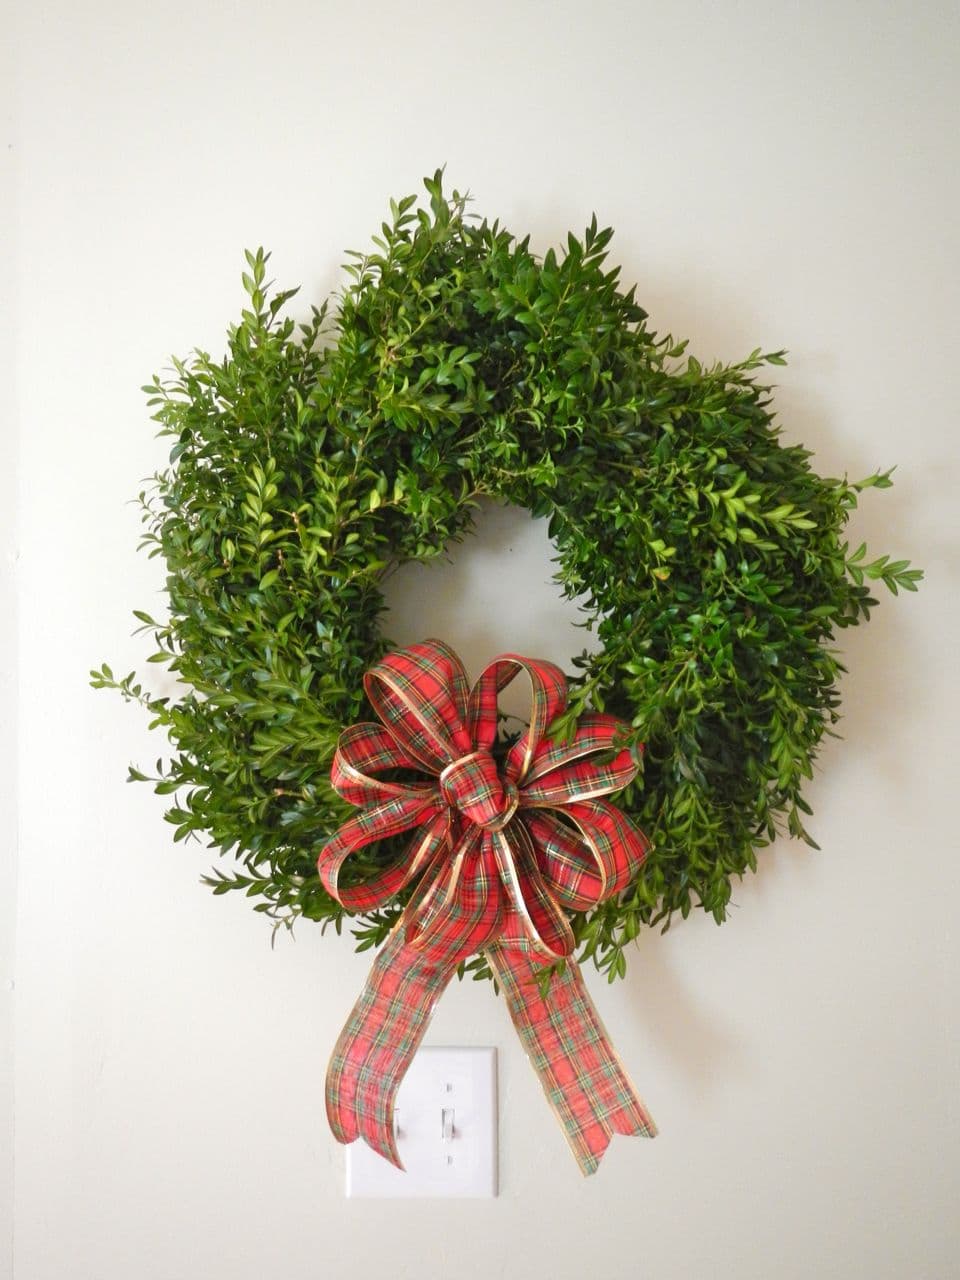 Embellished Trader Joe’s Boxwood Wreath